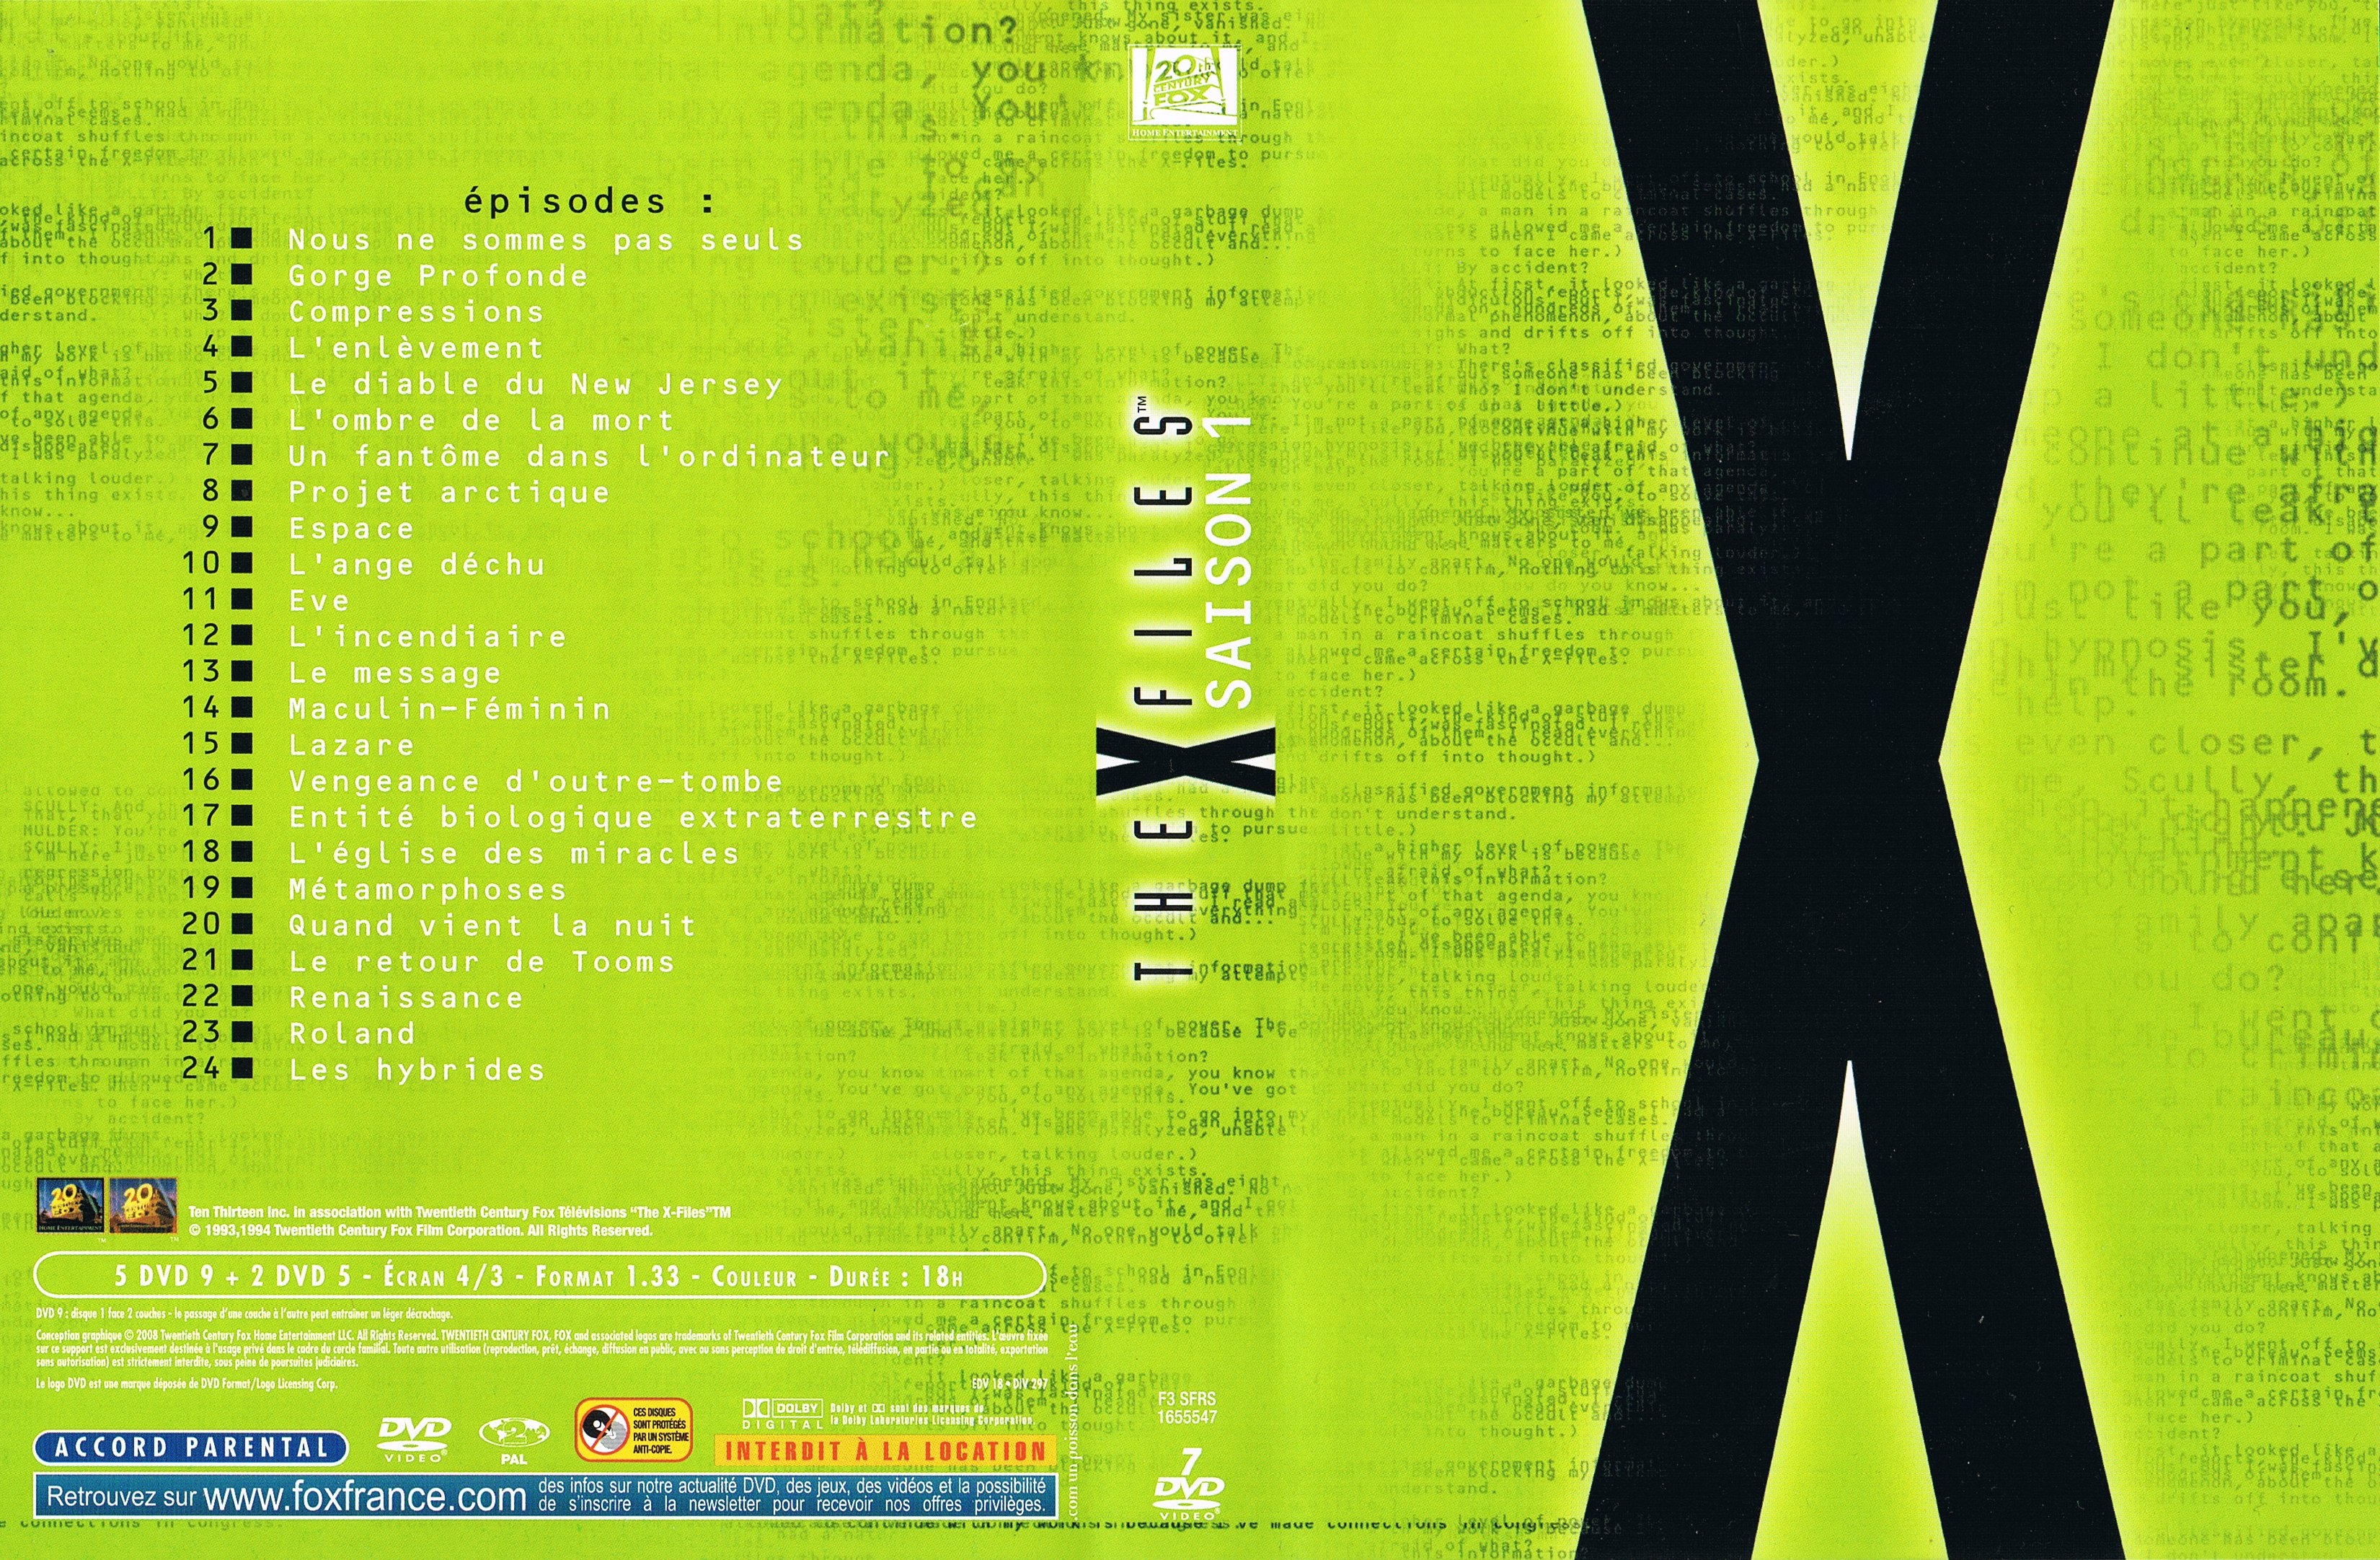 Jaquette DVD X files saison 1 COFFRET v2